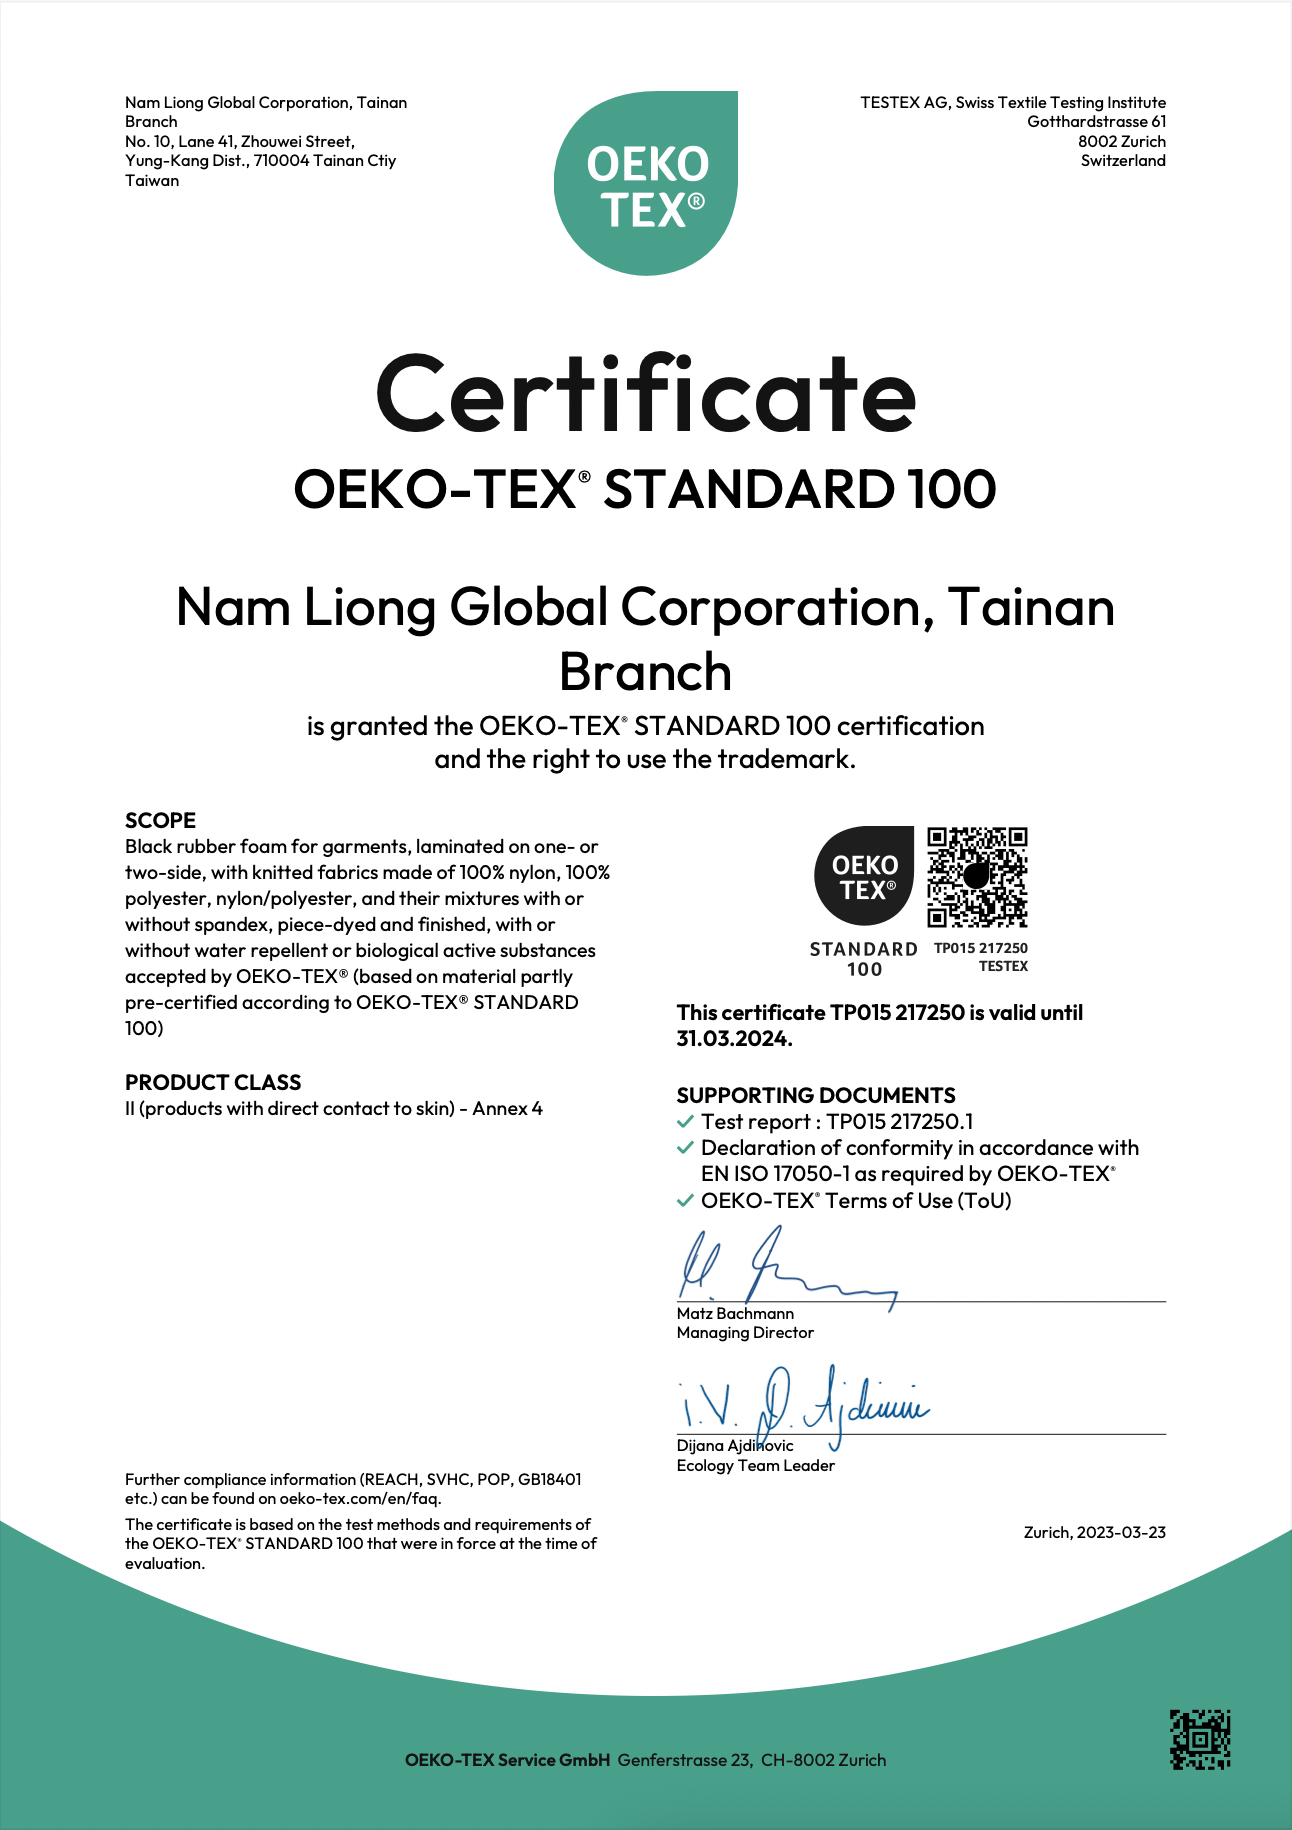 گواهی Oeko-Tex Standard 100® گذرانده شده است.